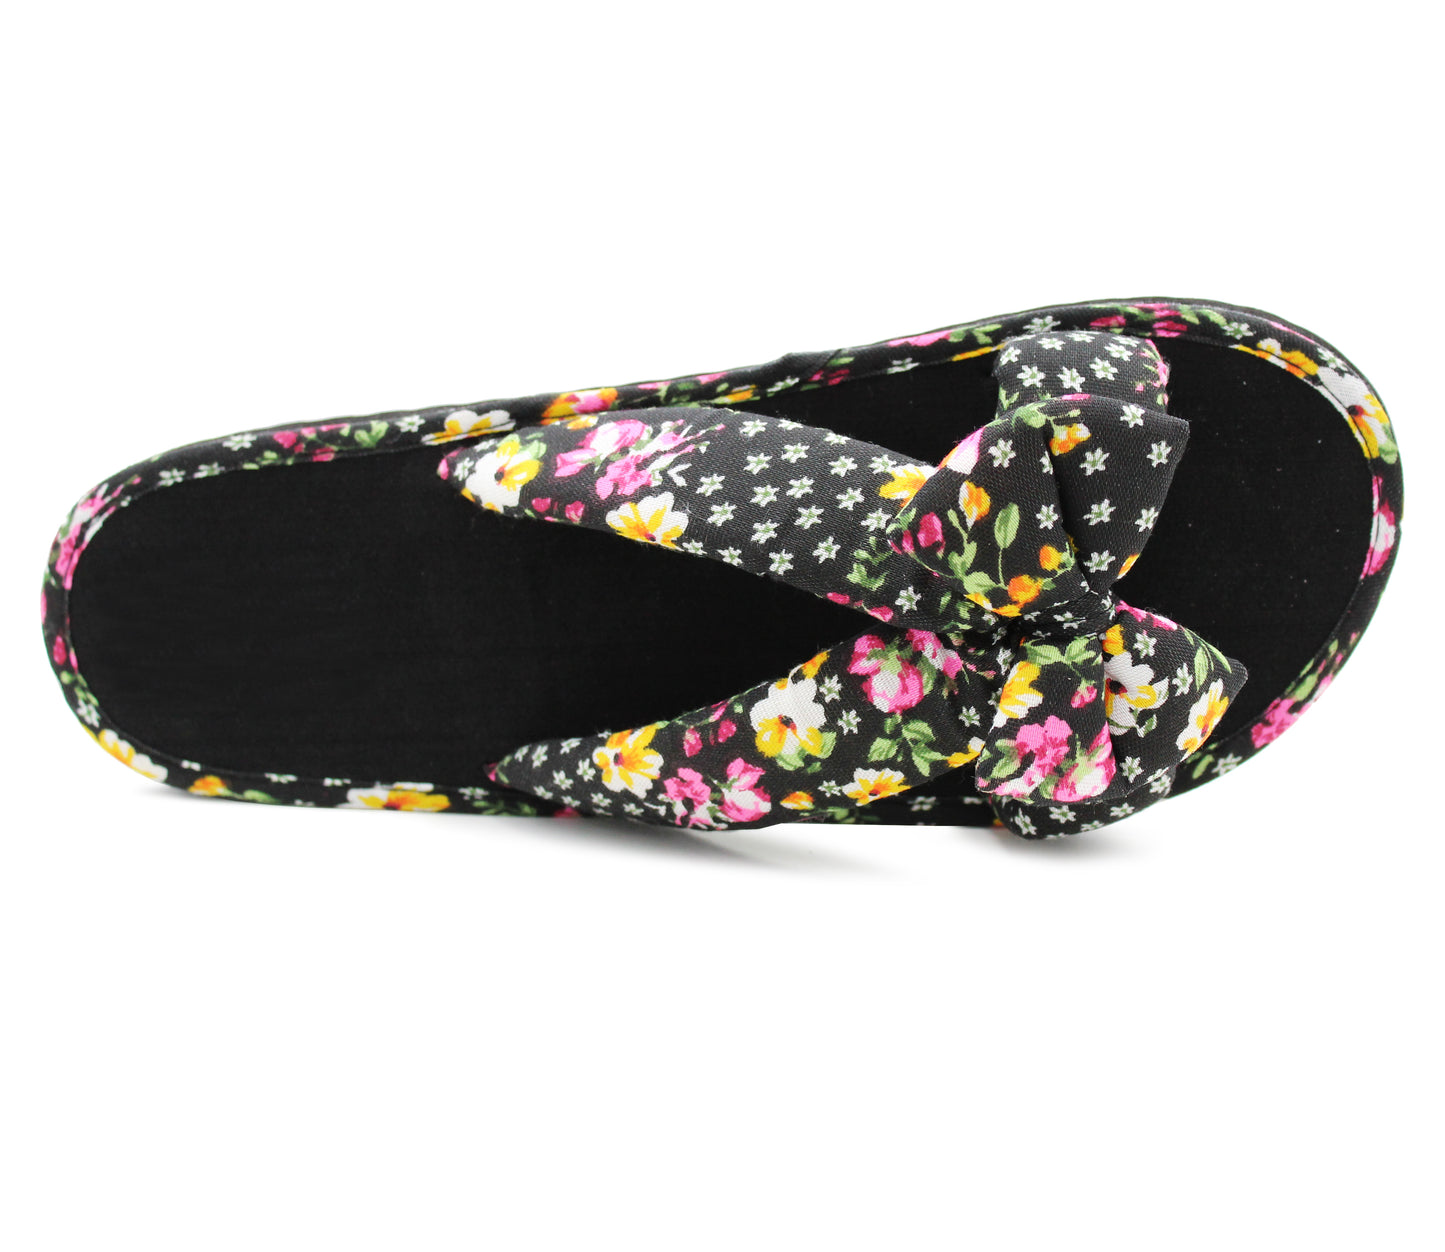 Womens Floral Mule Sandals Slip On Summer Beach Flip Flops Ladies Flat Bow Sliders Spa Pool Slides Black Floral